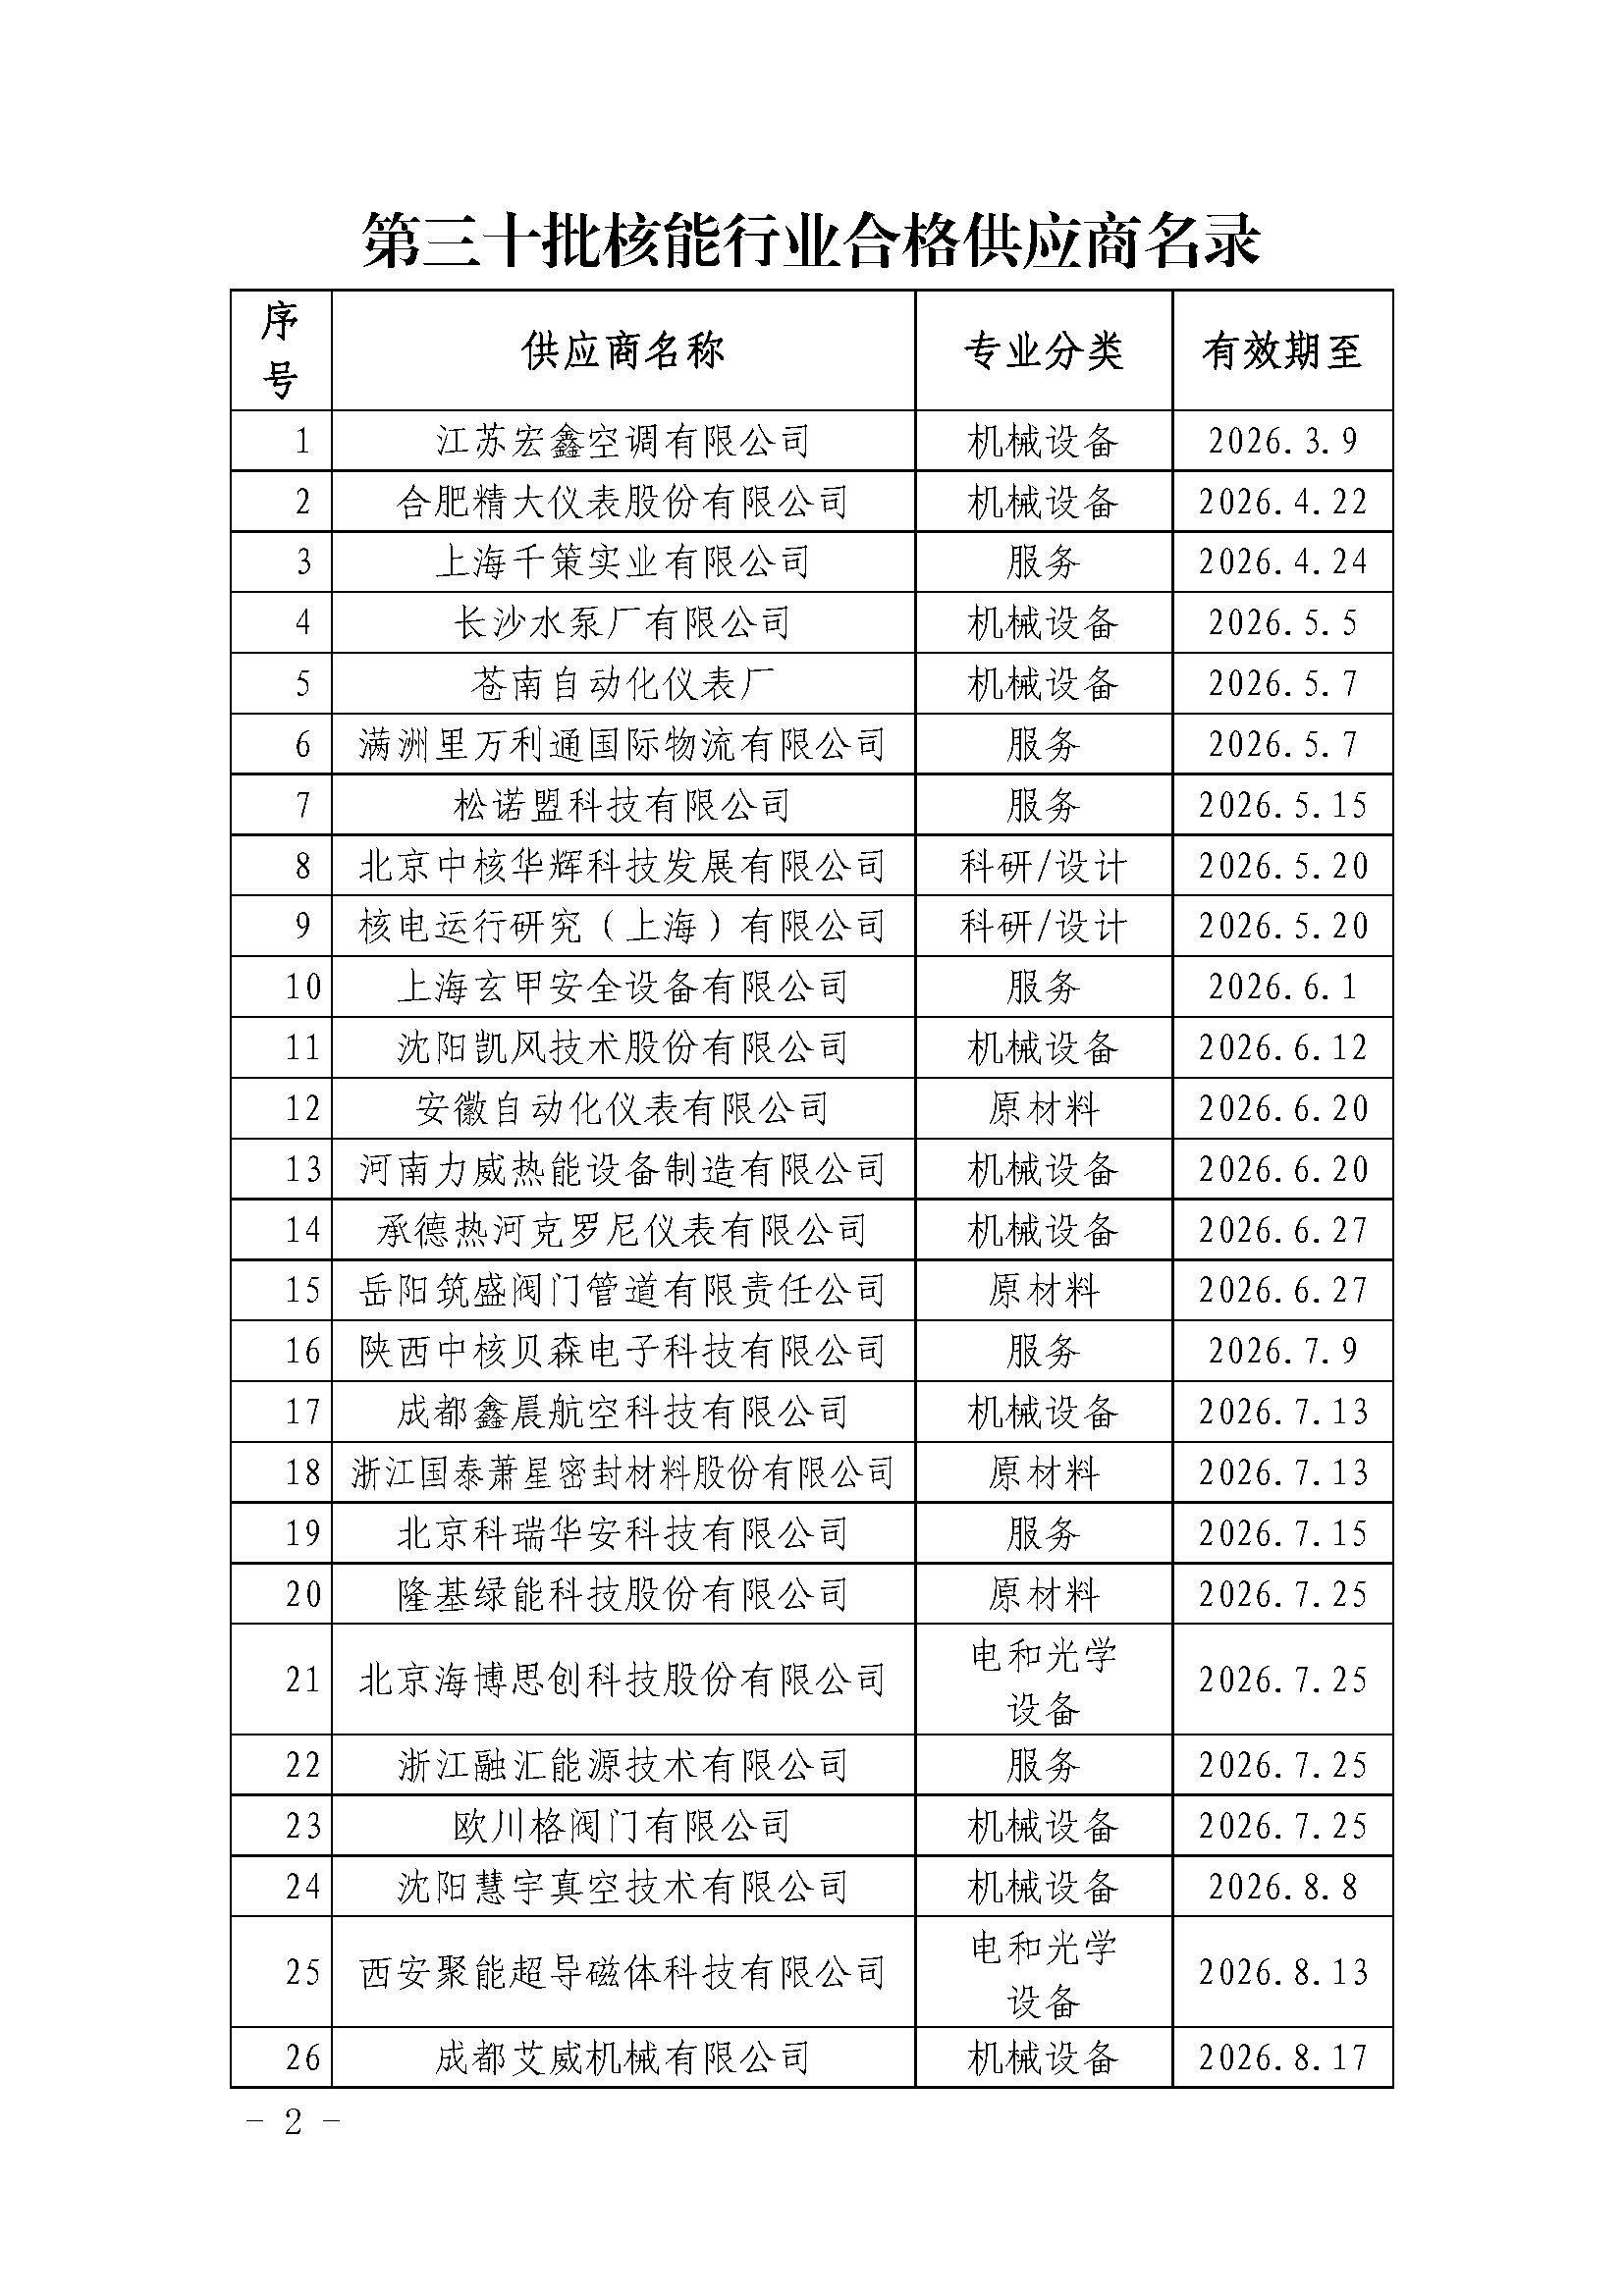 中国核能行业协会关于发布第三十批核能行业合格供应商名录的公告_页面_2.jpg